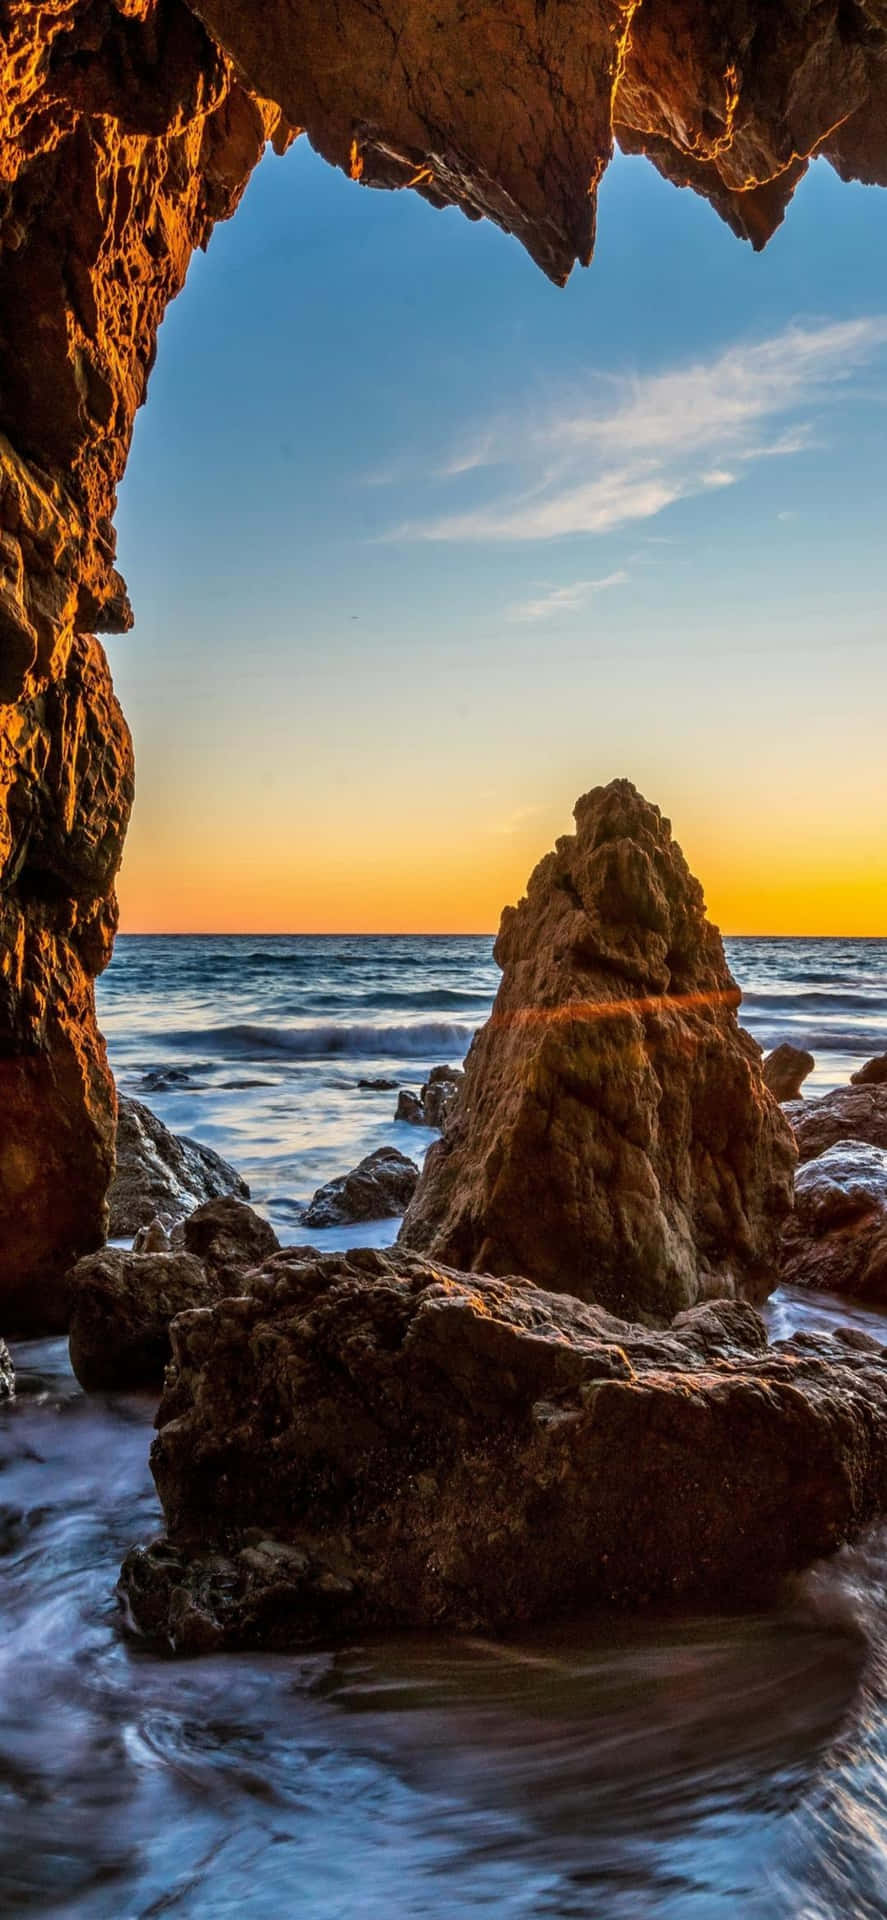 Genießensie Spektakuläre Ausblicke Auf Malibu Mit Dem Iphone Xs.